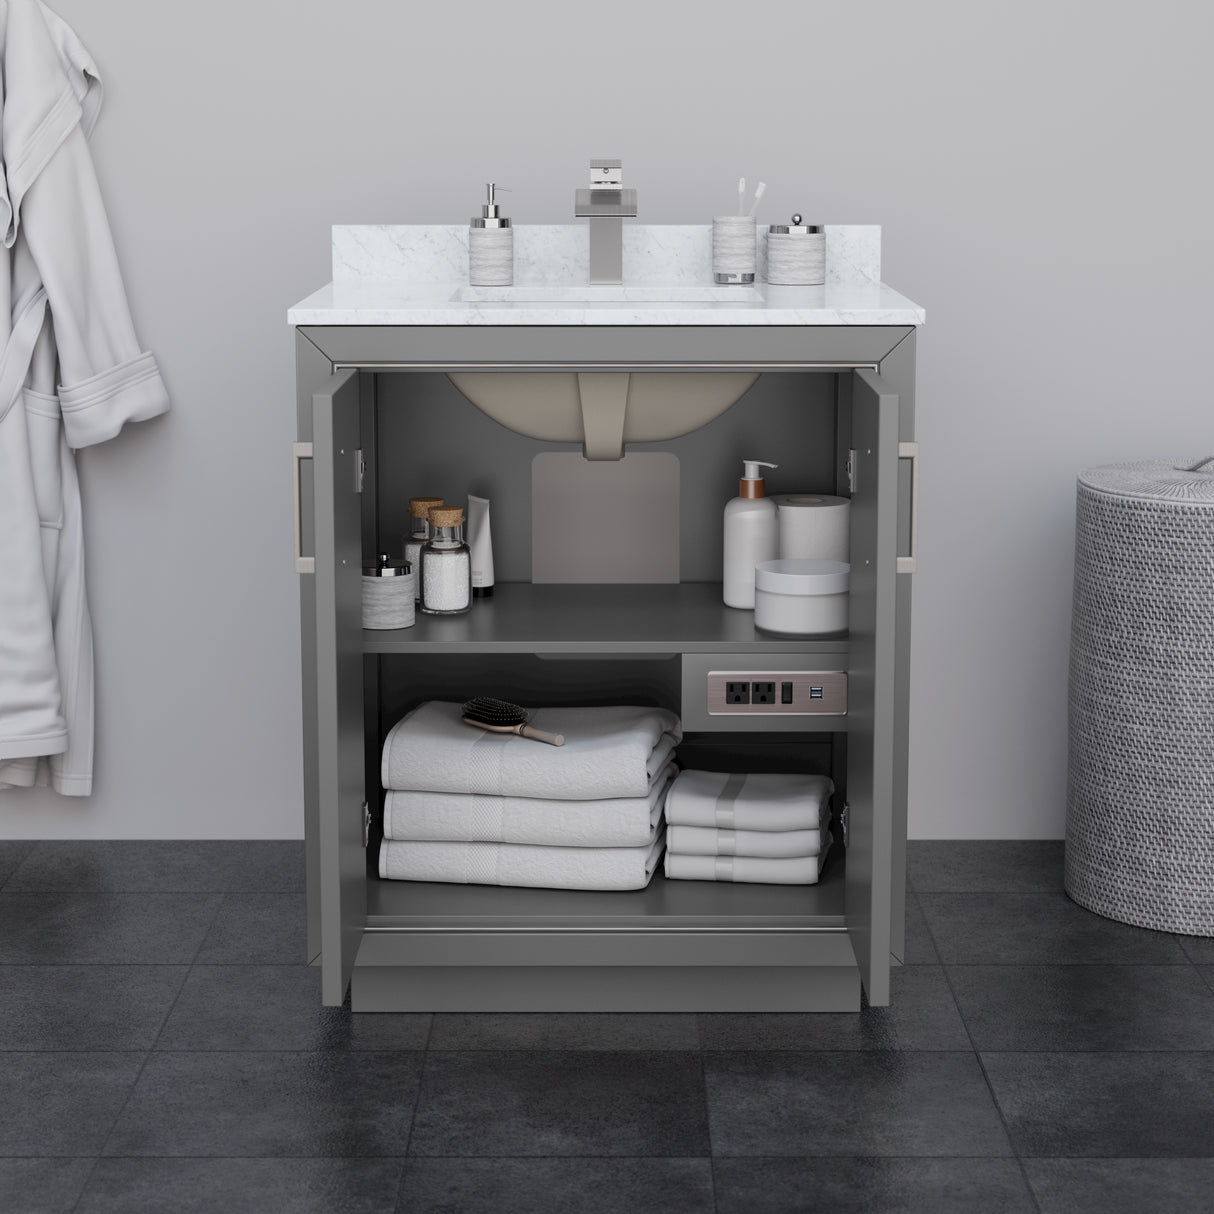 Icon 30 Inch Single Bathroom Vanity in Dark Gray No Countertop No Sink Brushed Nickel Trim 24 Inch Mirror